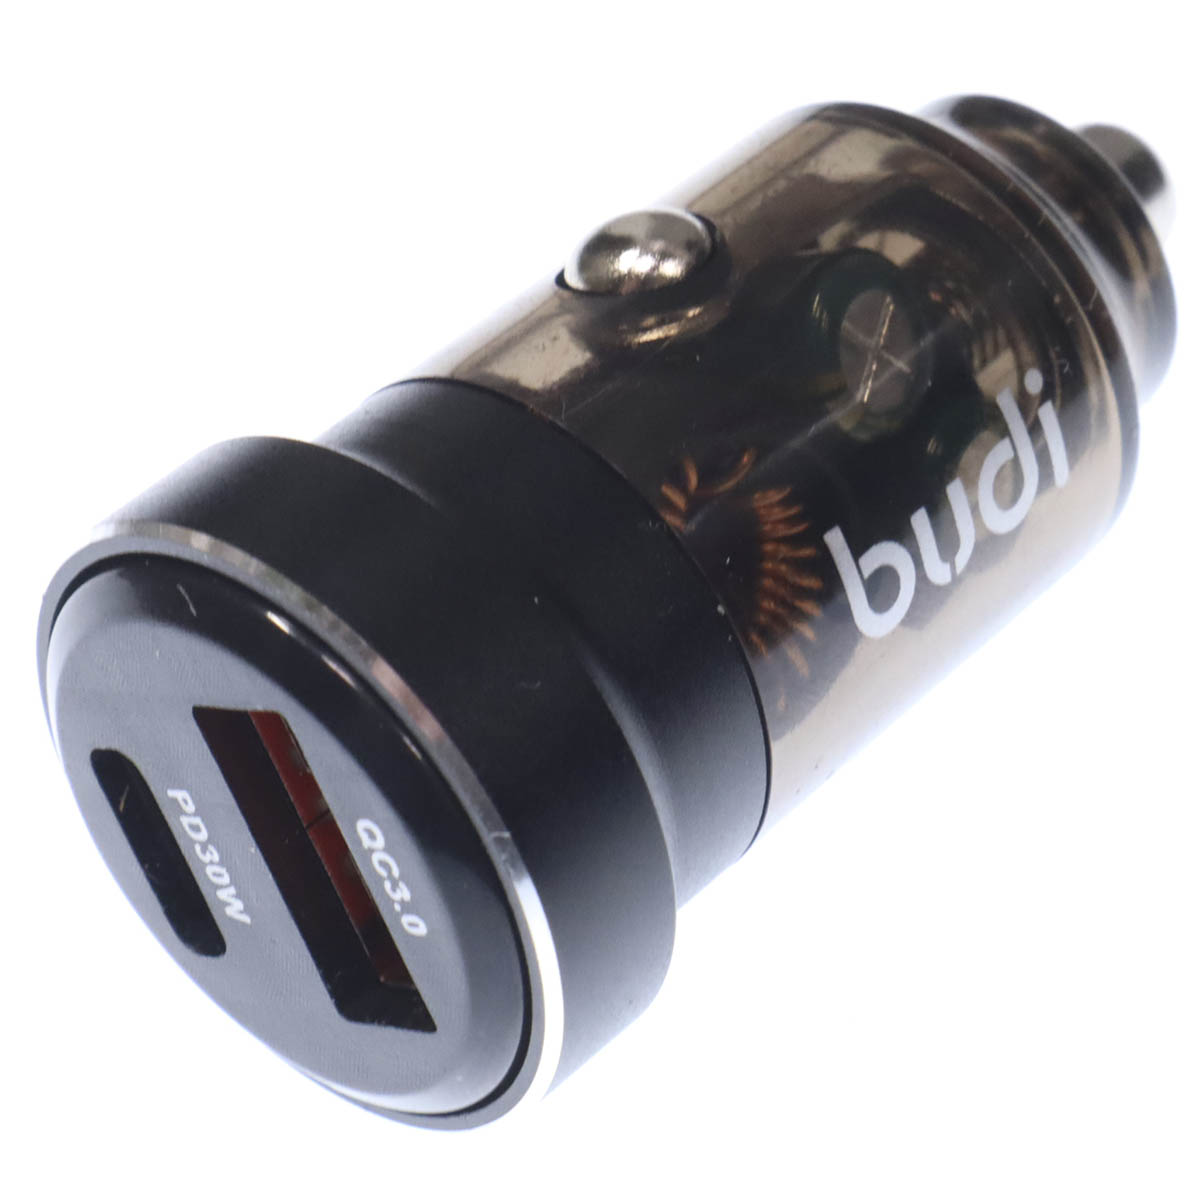 АЗУ (Автомобильное зарядное устройство) BUDI CC633B, 30W, 1*USB Type C, 1*USB, цвет черный